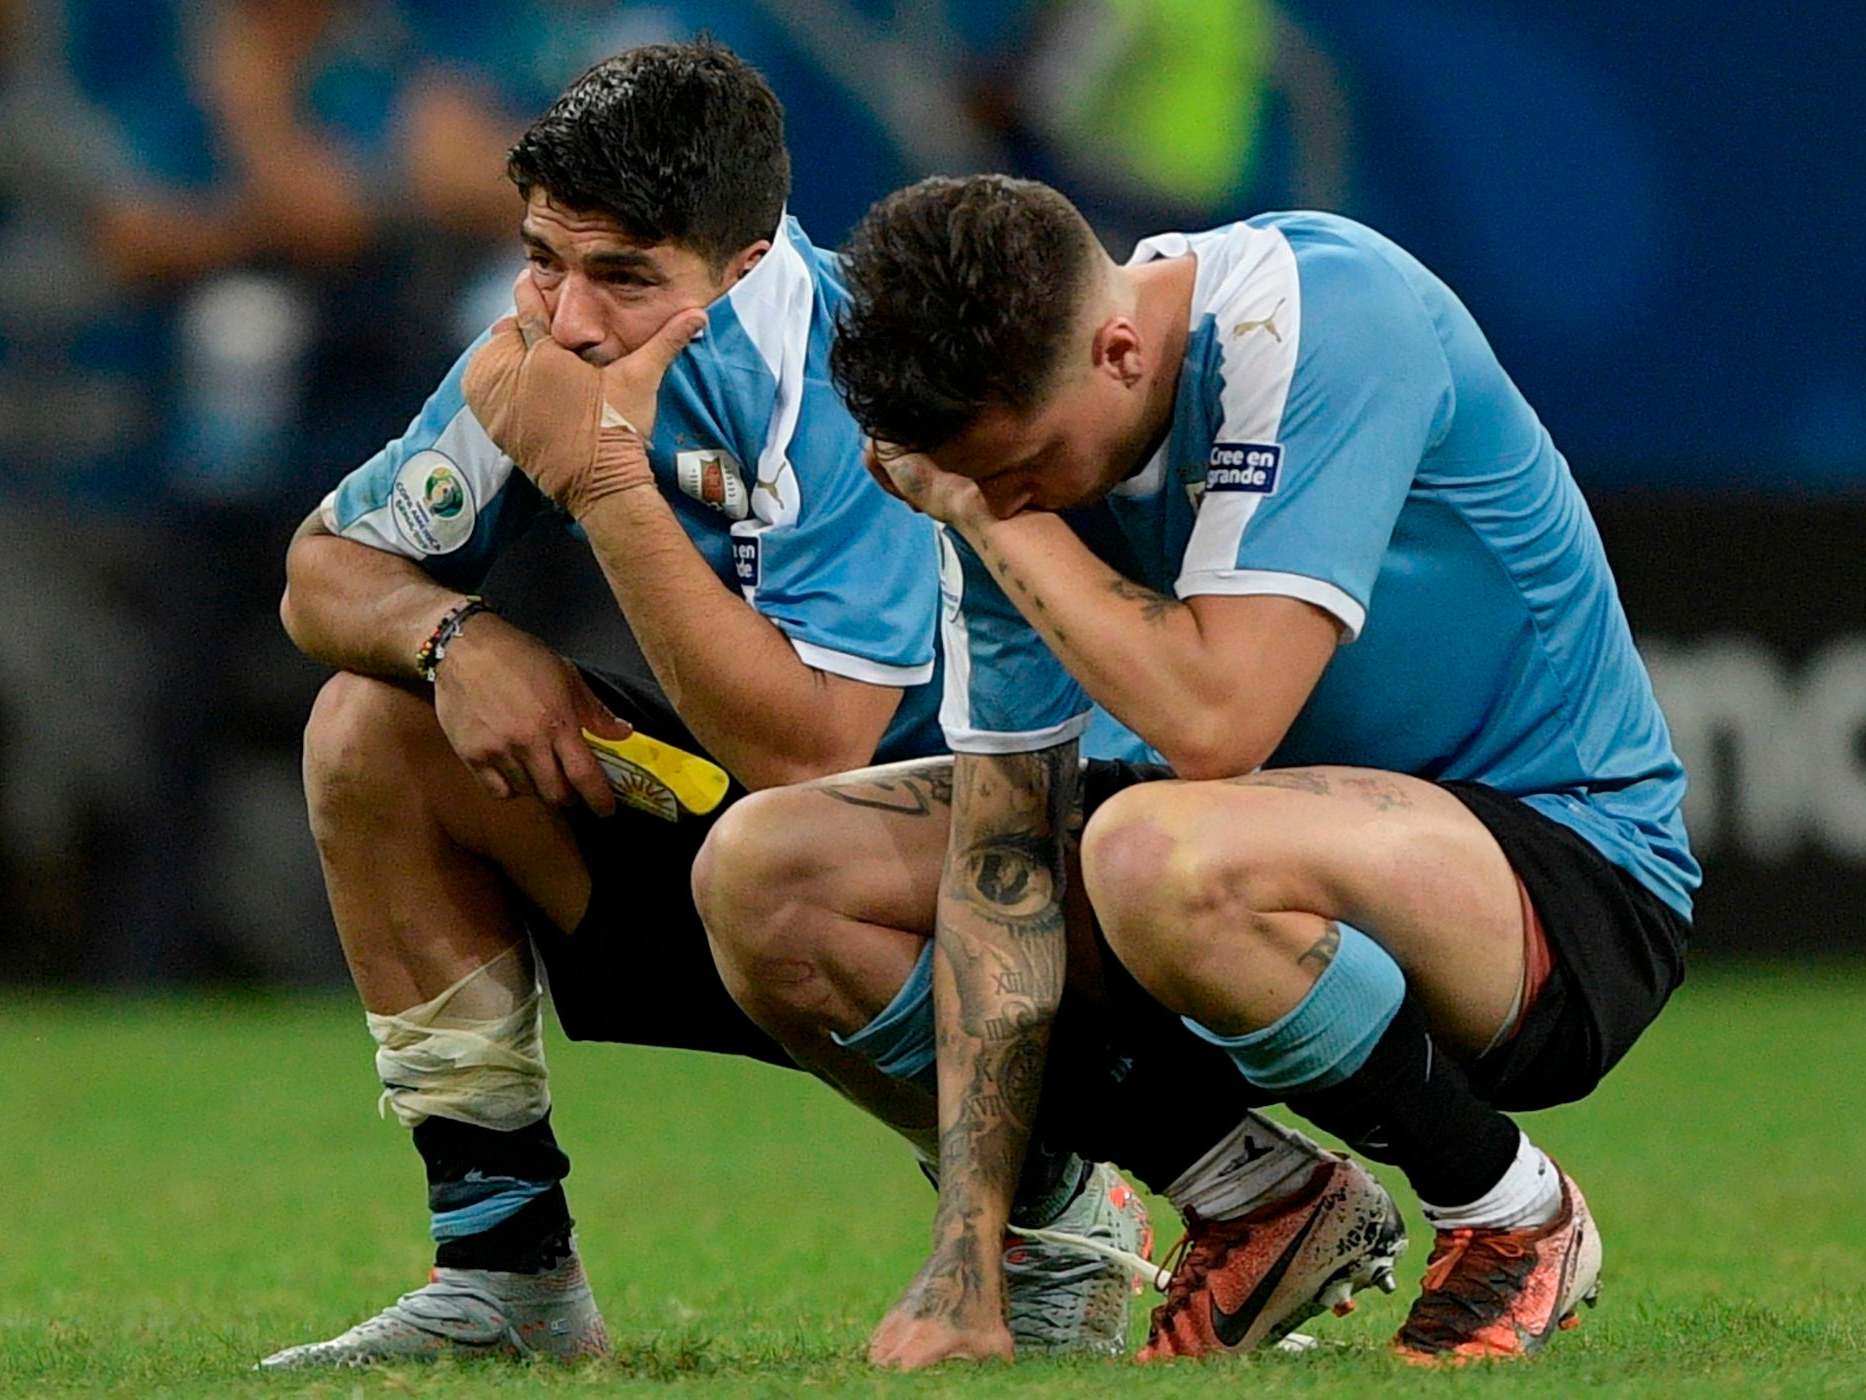 Suarez' Nacional knocked out of Copa Sudamericana